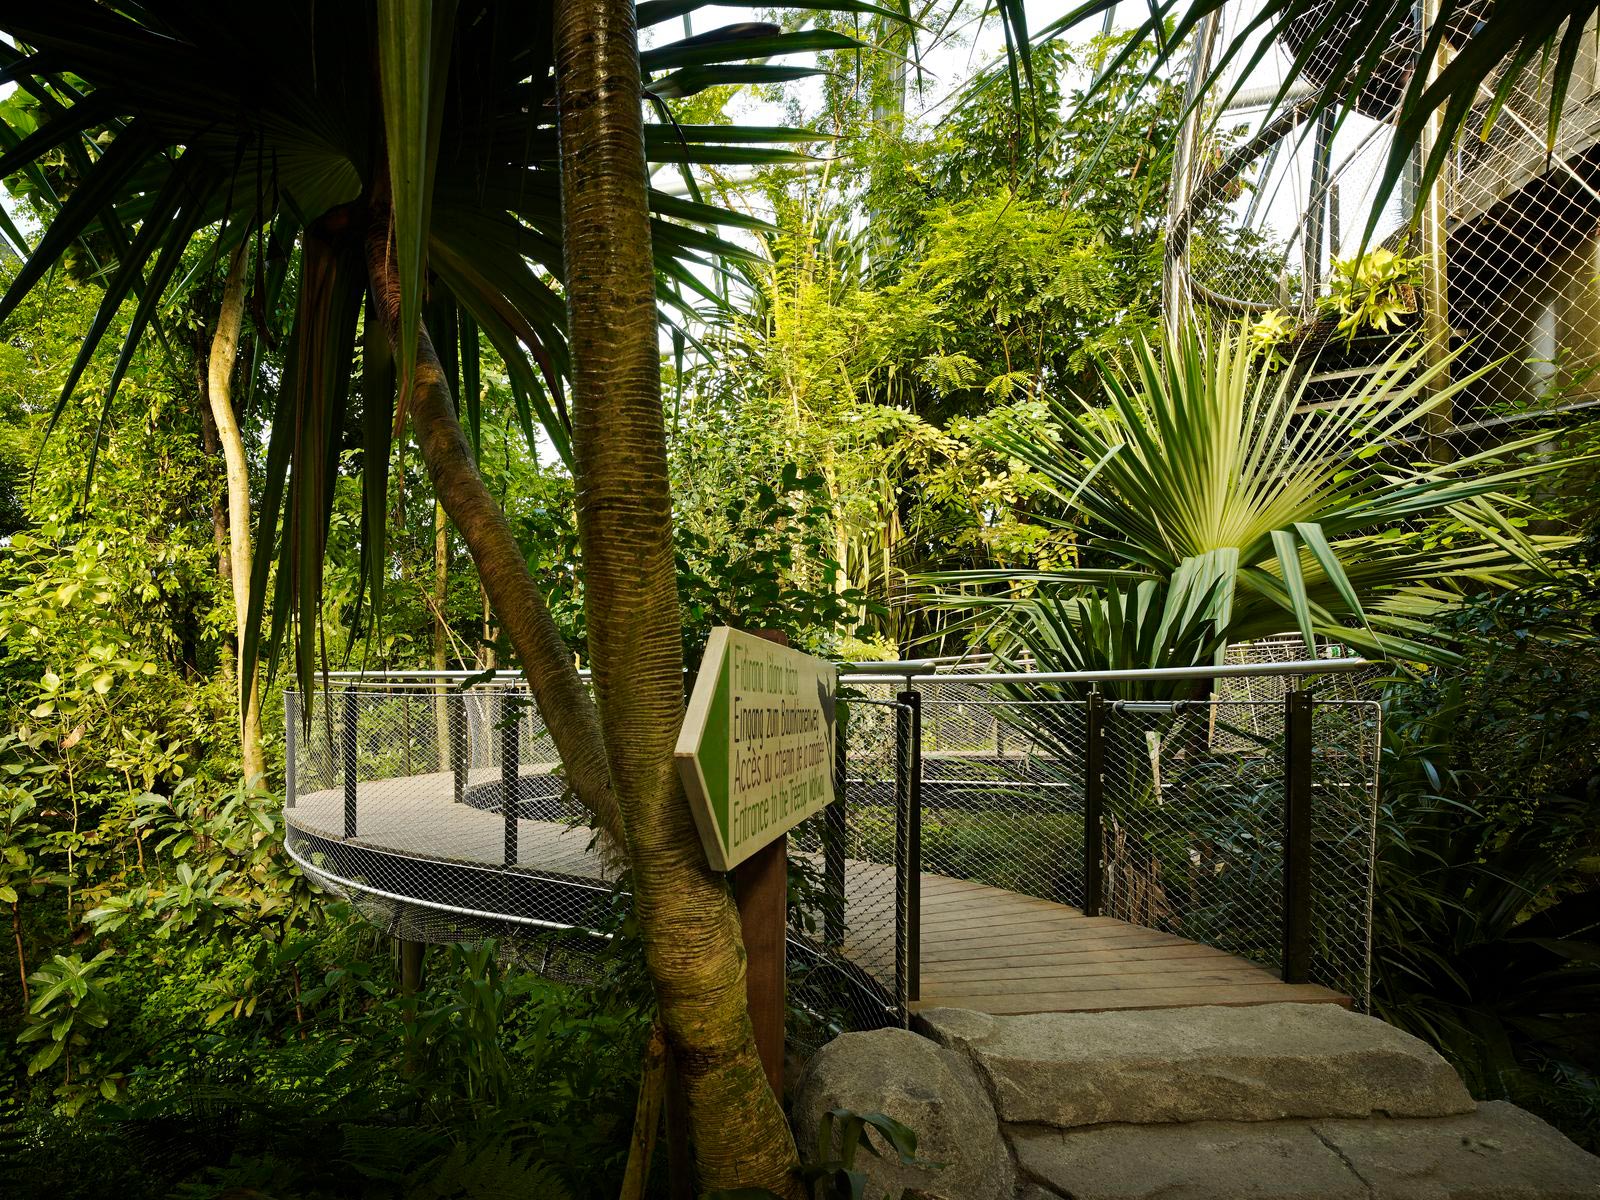 Webnet railing at Masoala Hall, Zoo zürich